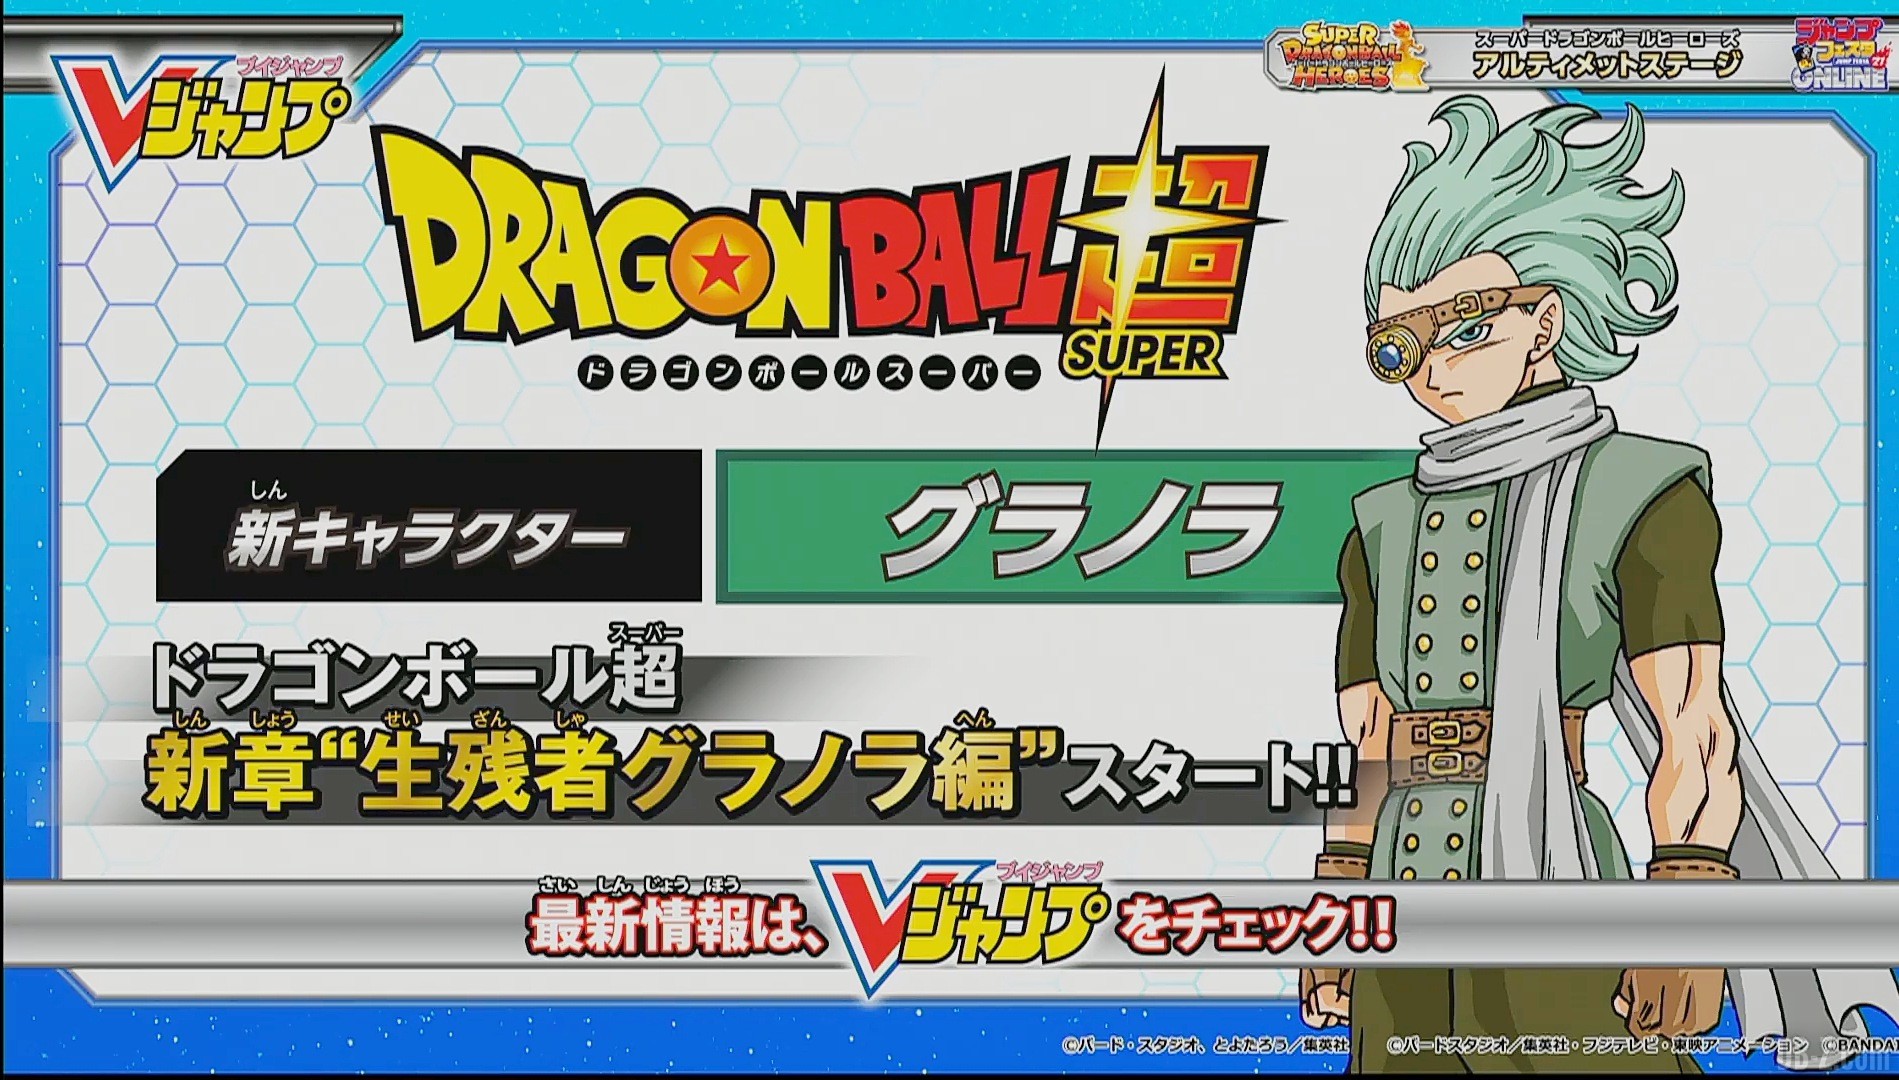 Granola apparaît en couleur ! Le nouveau personnage de Dragon Ball Super se dévoile.